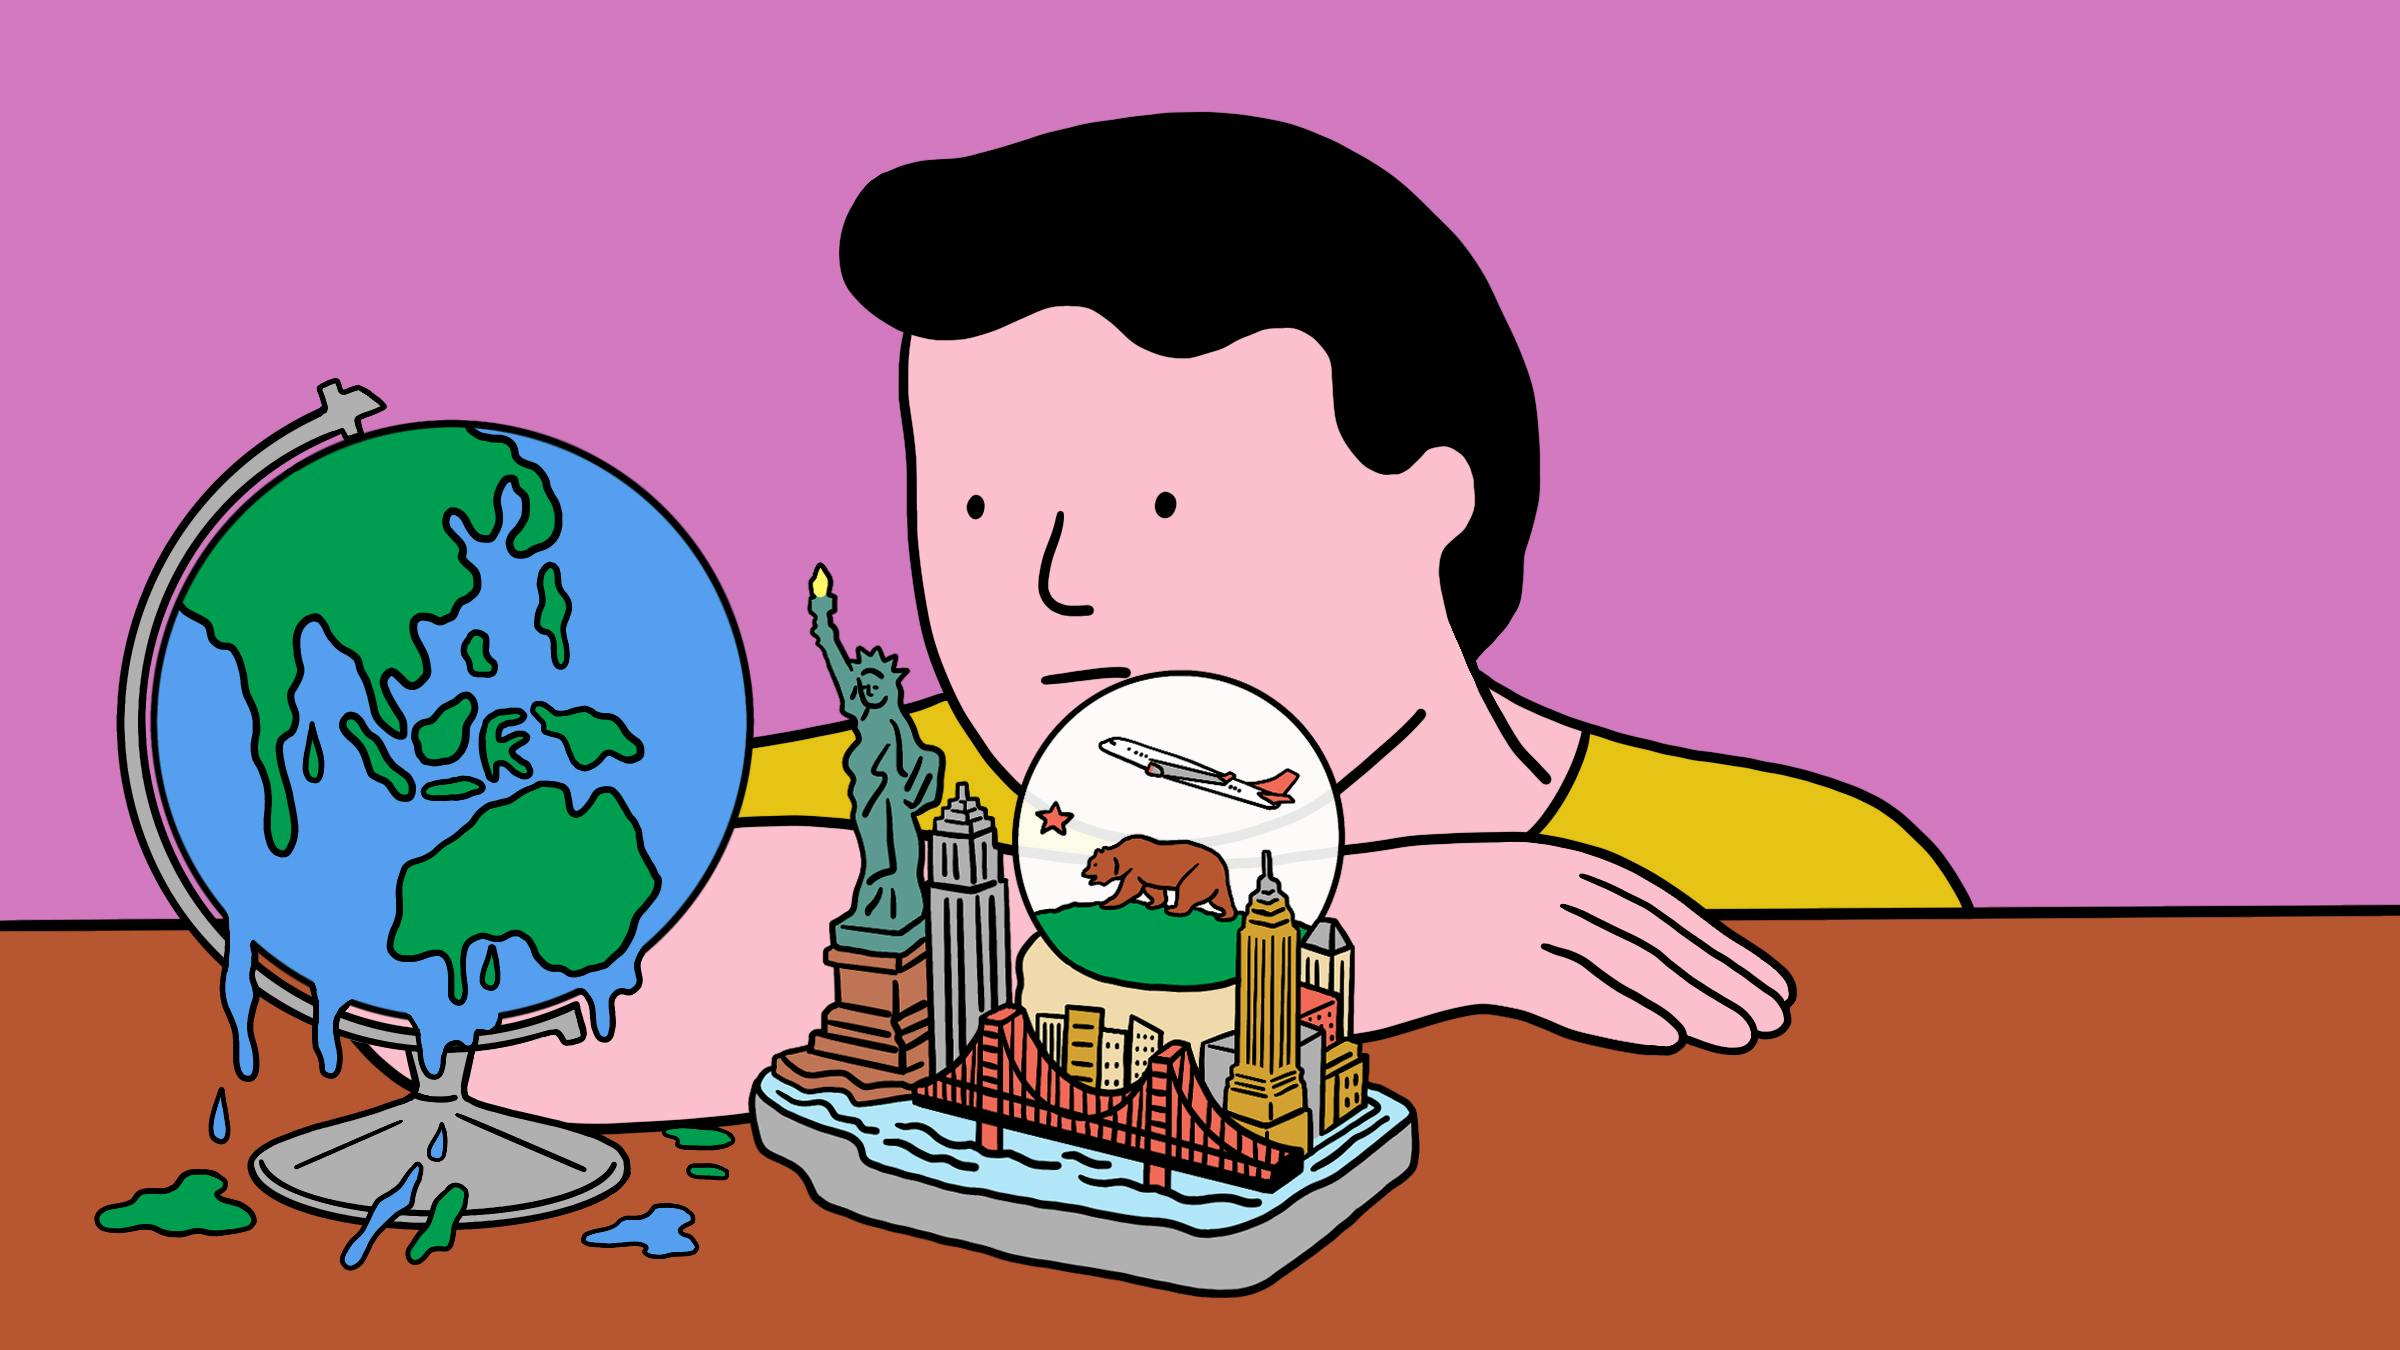 Auf der Zeichnung sieht man einen Mann, der bedröppelt auf einen Globus guckt, der so aussieht, als schmeze er, davor steht auch noch ein kleiner, figurativer Aufbau der Stadt New York.